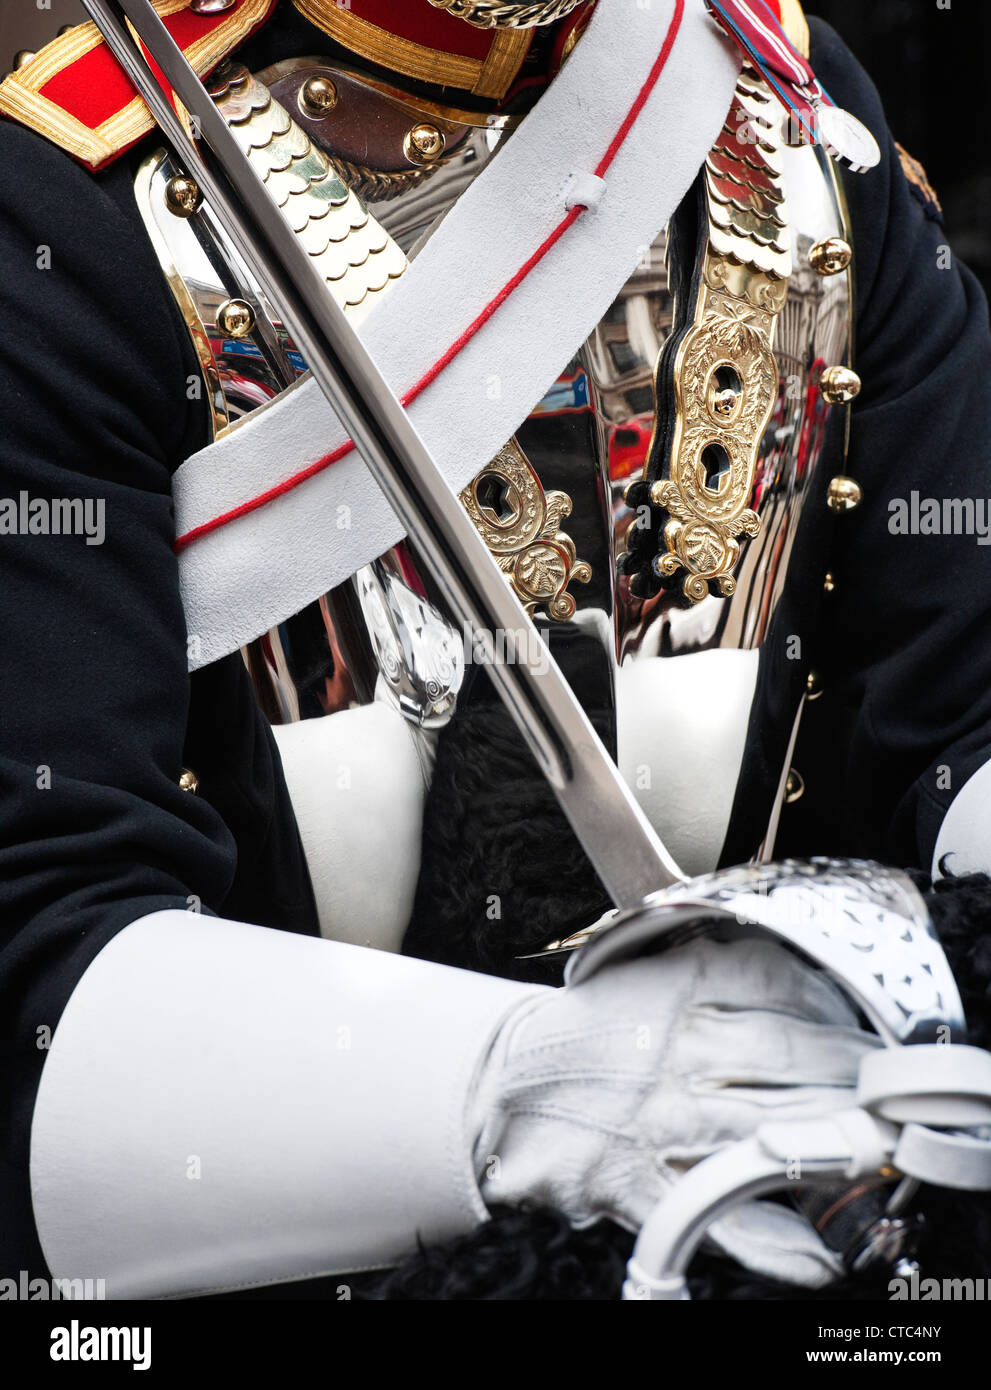 Dettaglio di un Blues e Royals uniforme e spada durante doveri cerimoniali presso la sfilata delle Guardie a Cavallo, Whitehall, Londra Foto Stock